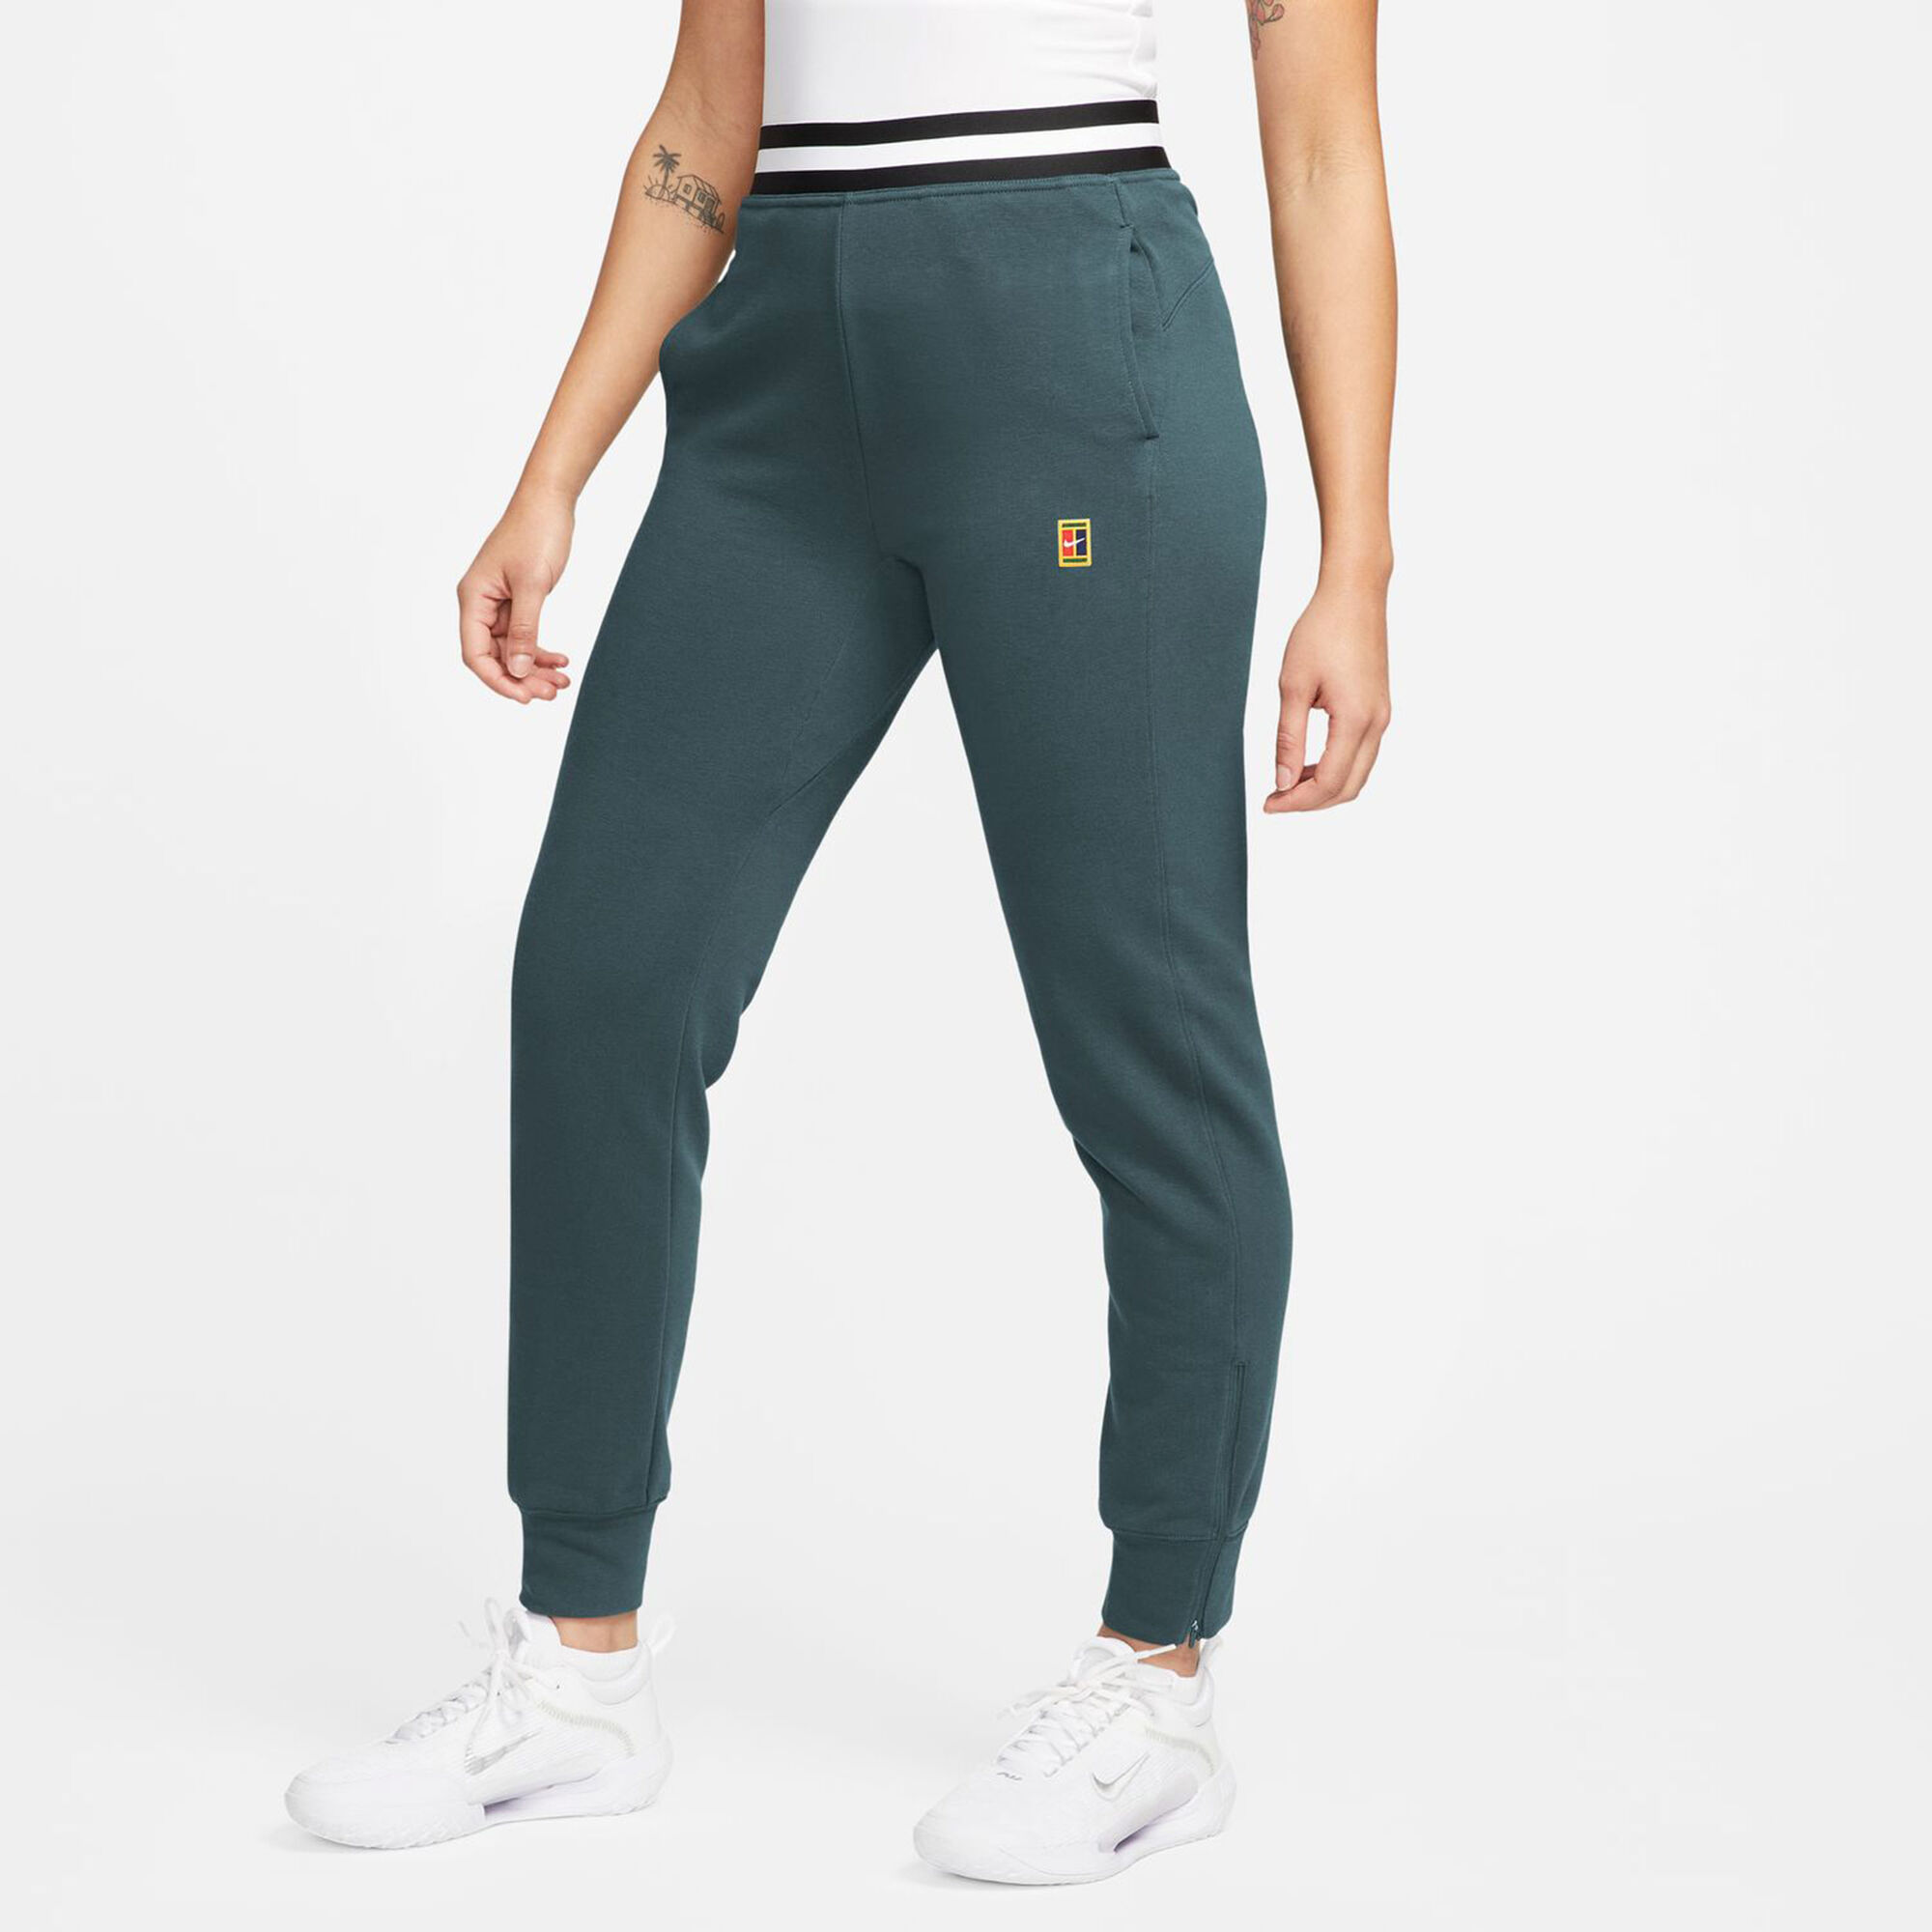 Pantalons de survêtement femme - Nike, Remise jusqu'à 79 %